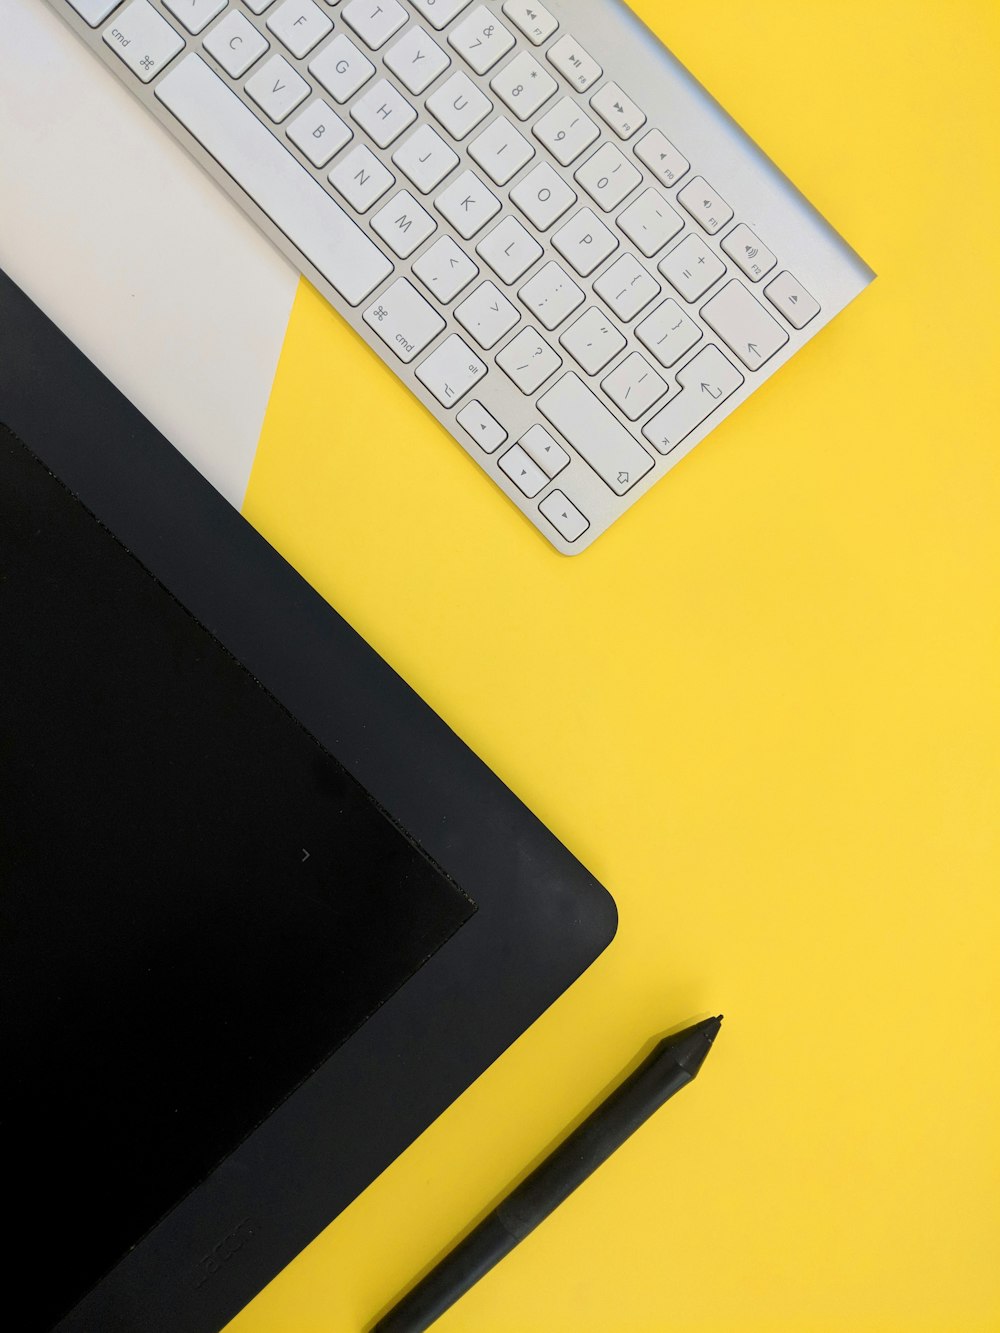 tastiera wireless Apple grigia accanto a tablet nero e penna stilo